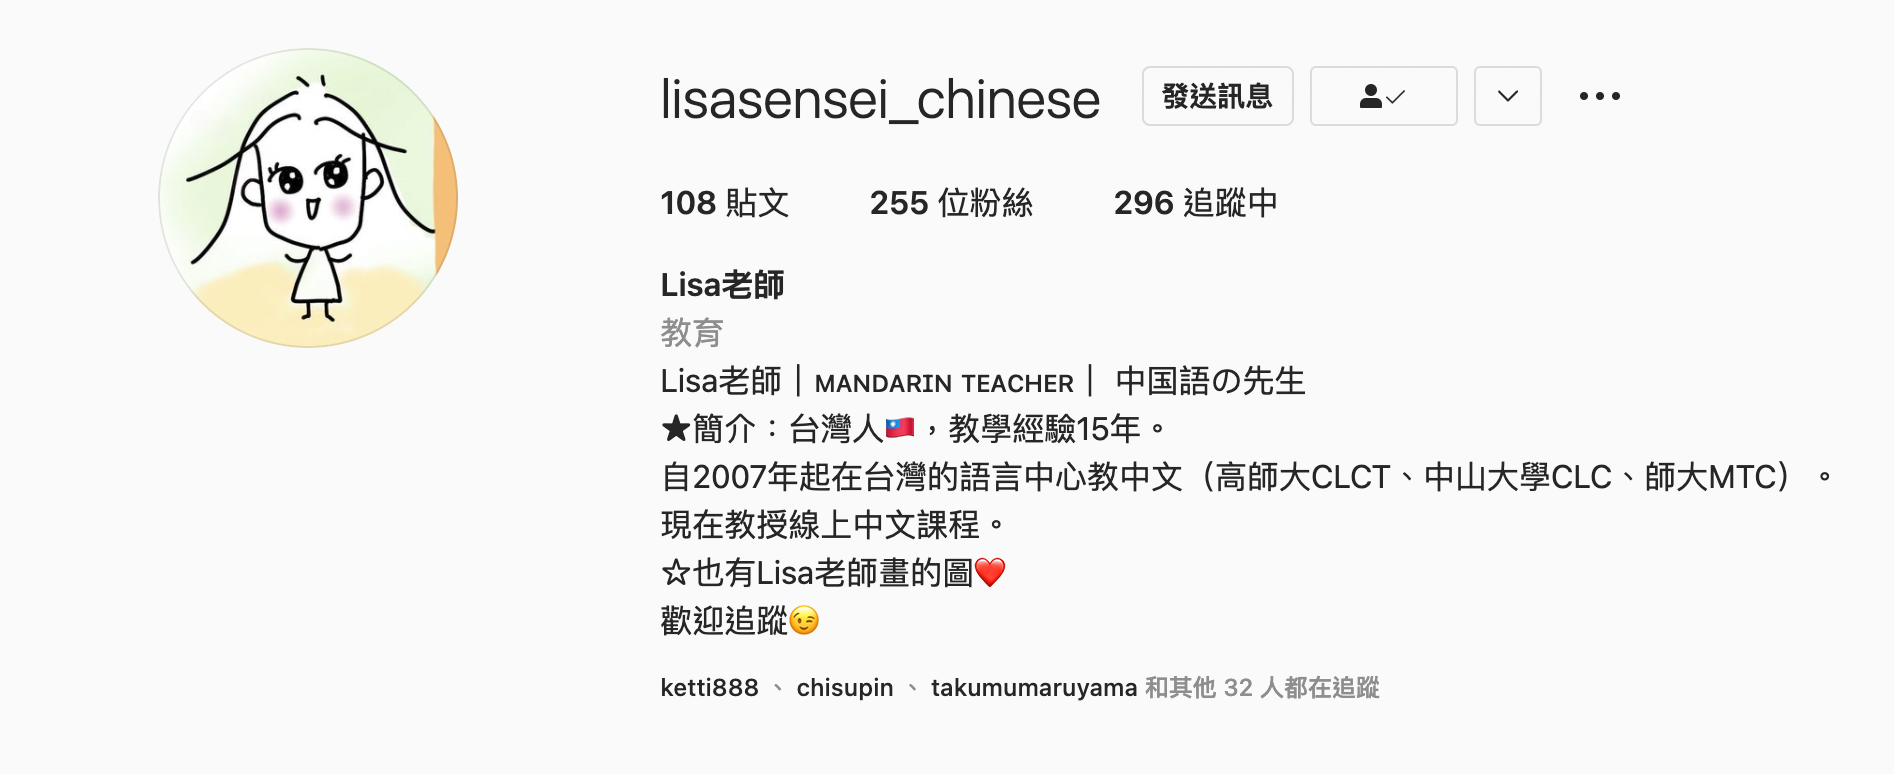 lisasensei_chinese